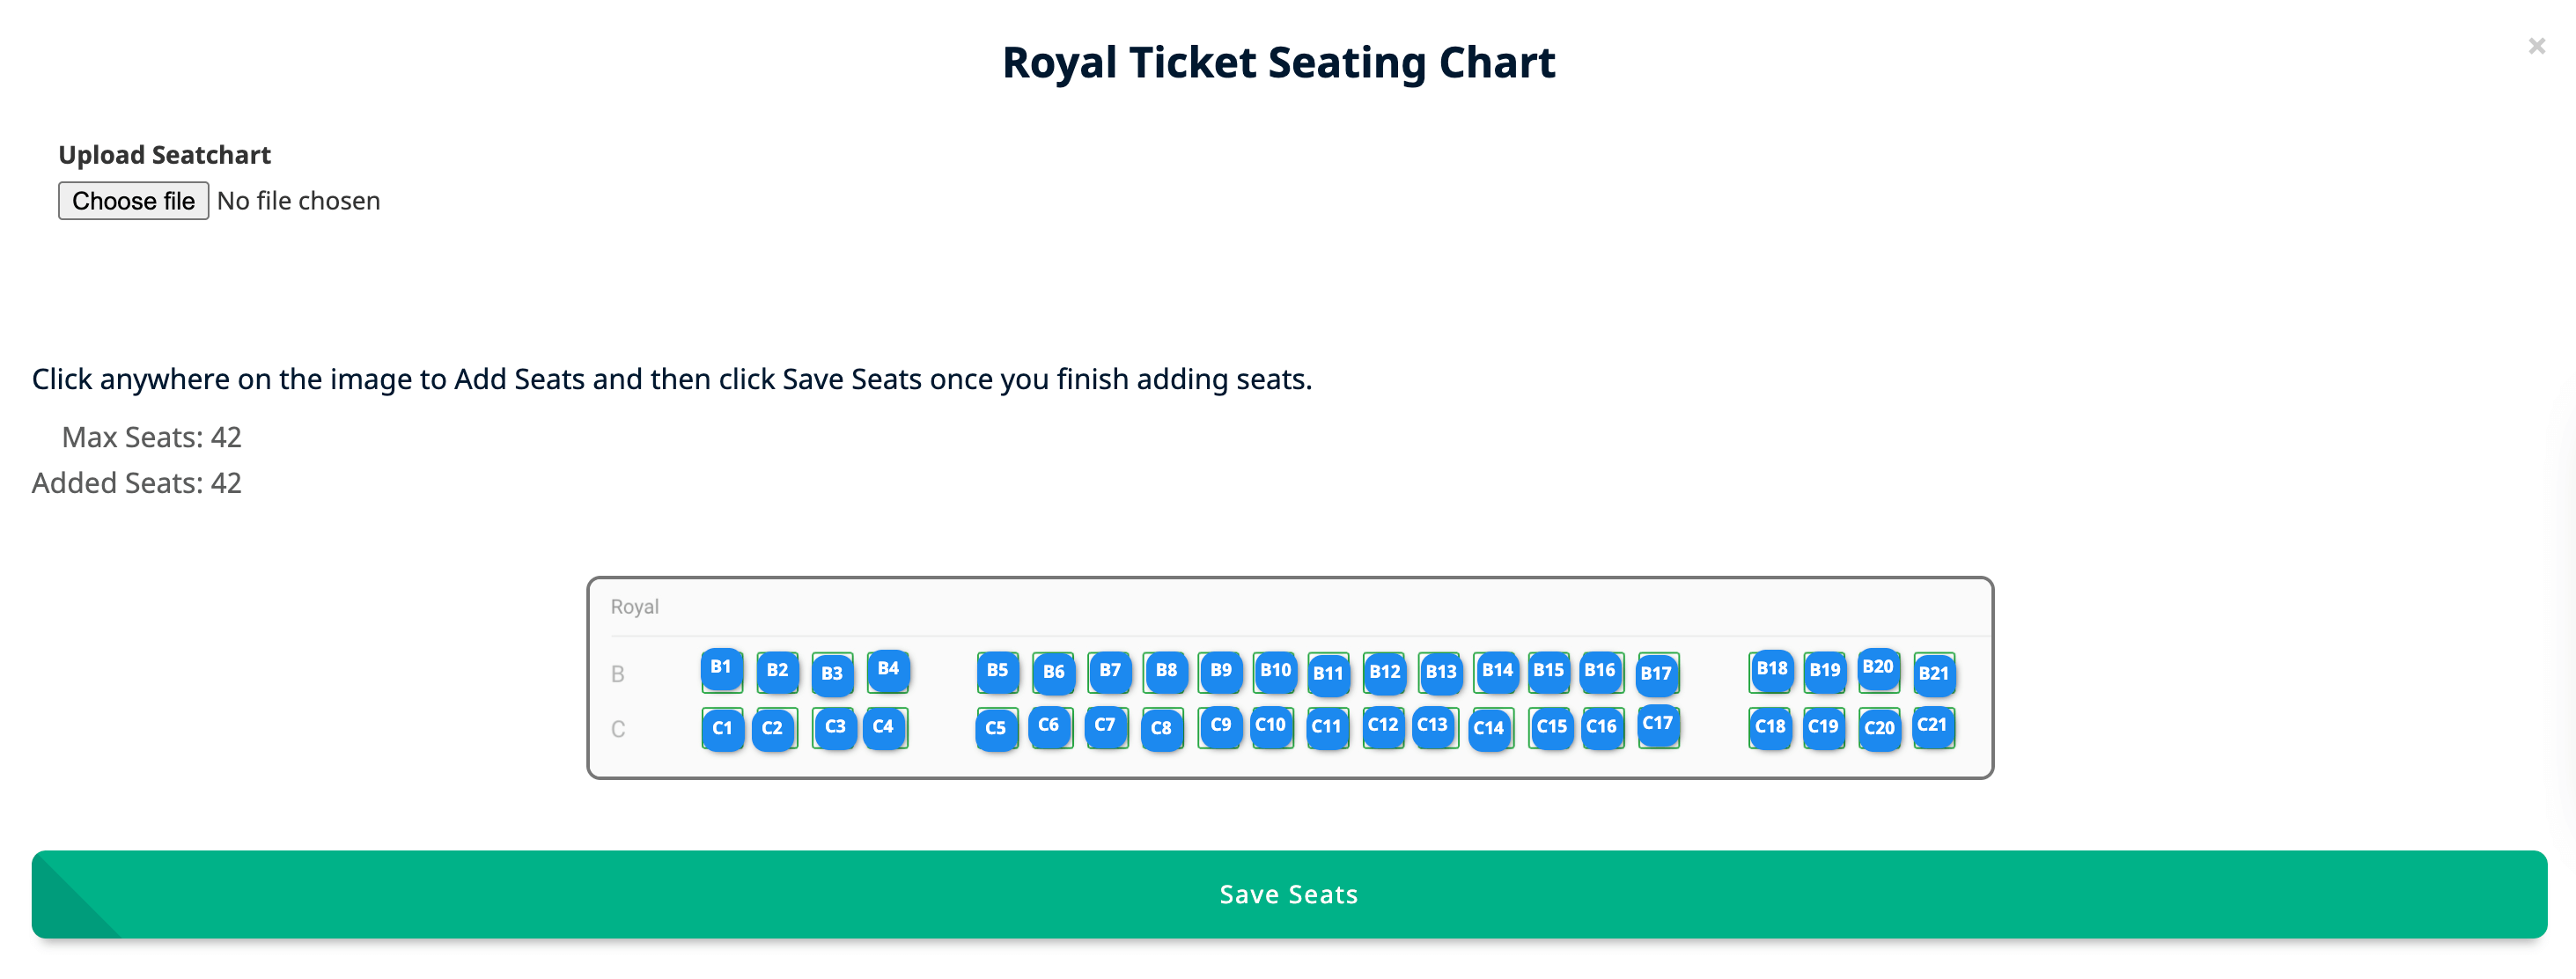 13-seating-royal